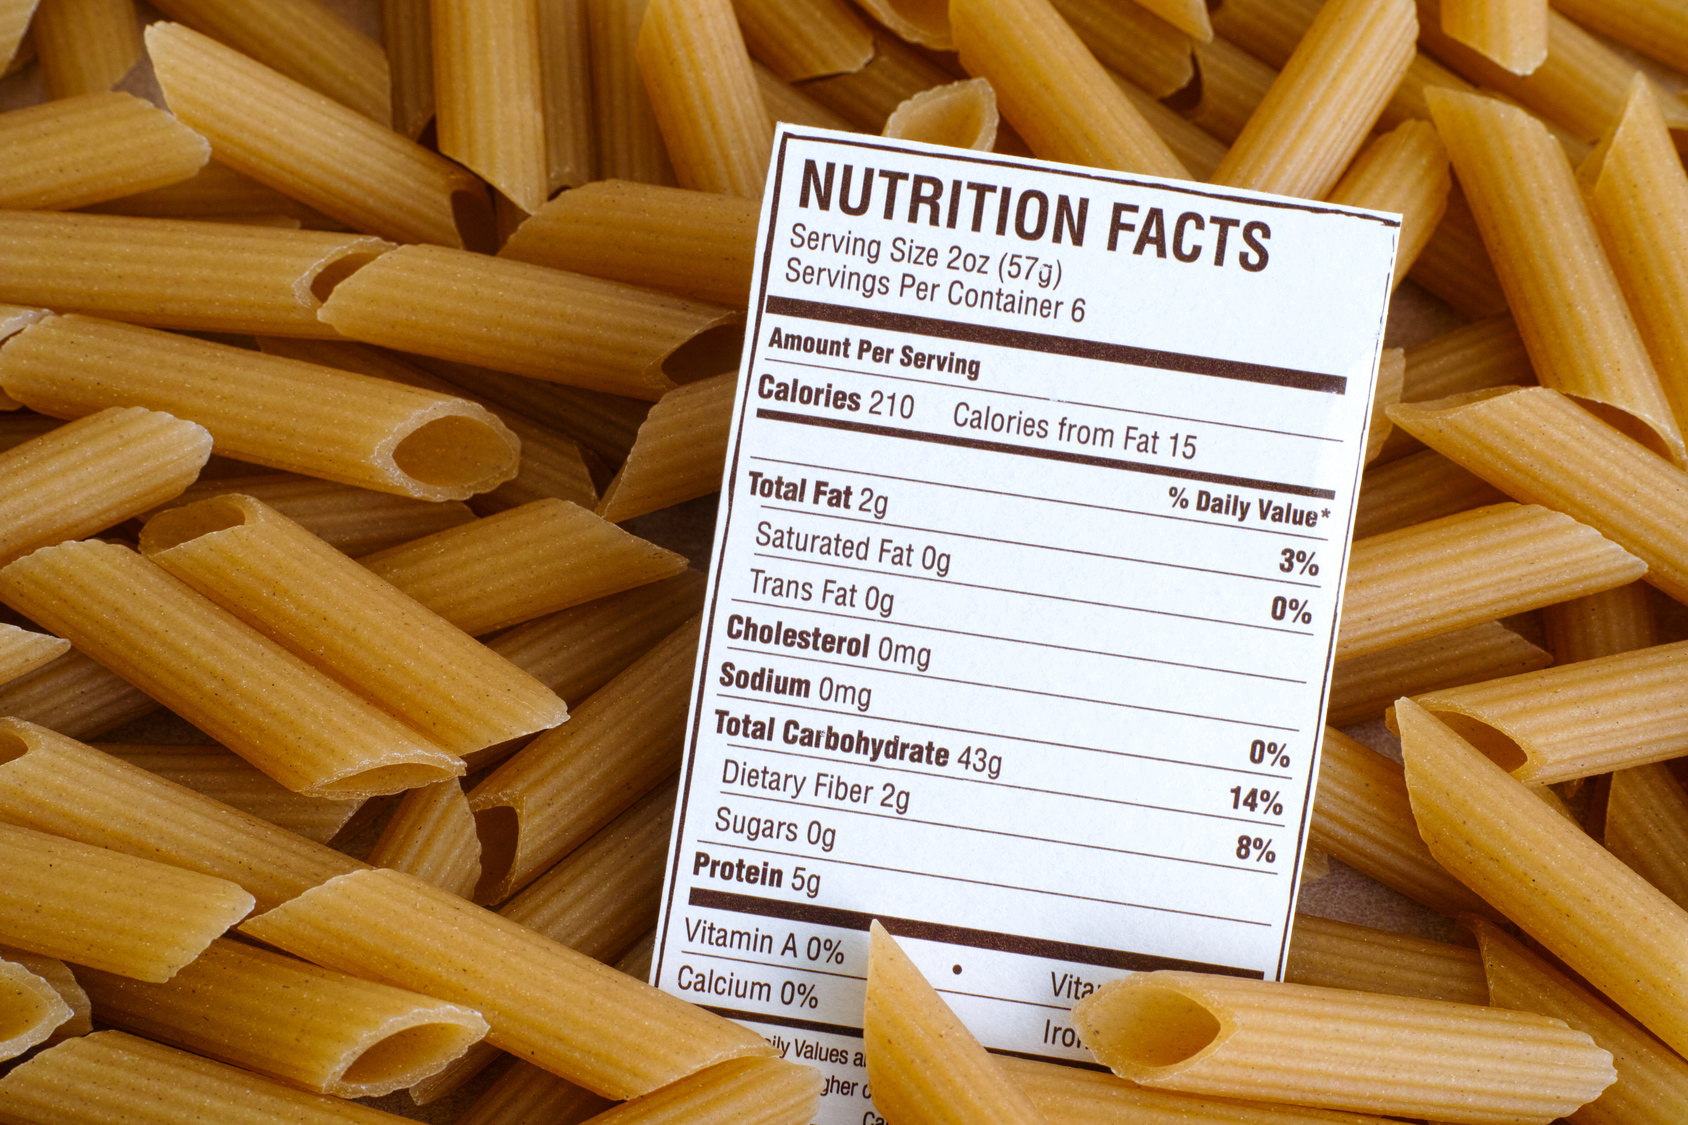 Etichette alimentari, come ottenere le Tabelle nutrizionali per i tuoi prodotti: tre modi ammessi dalla legge.